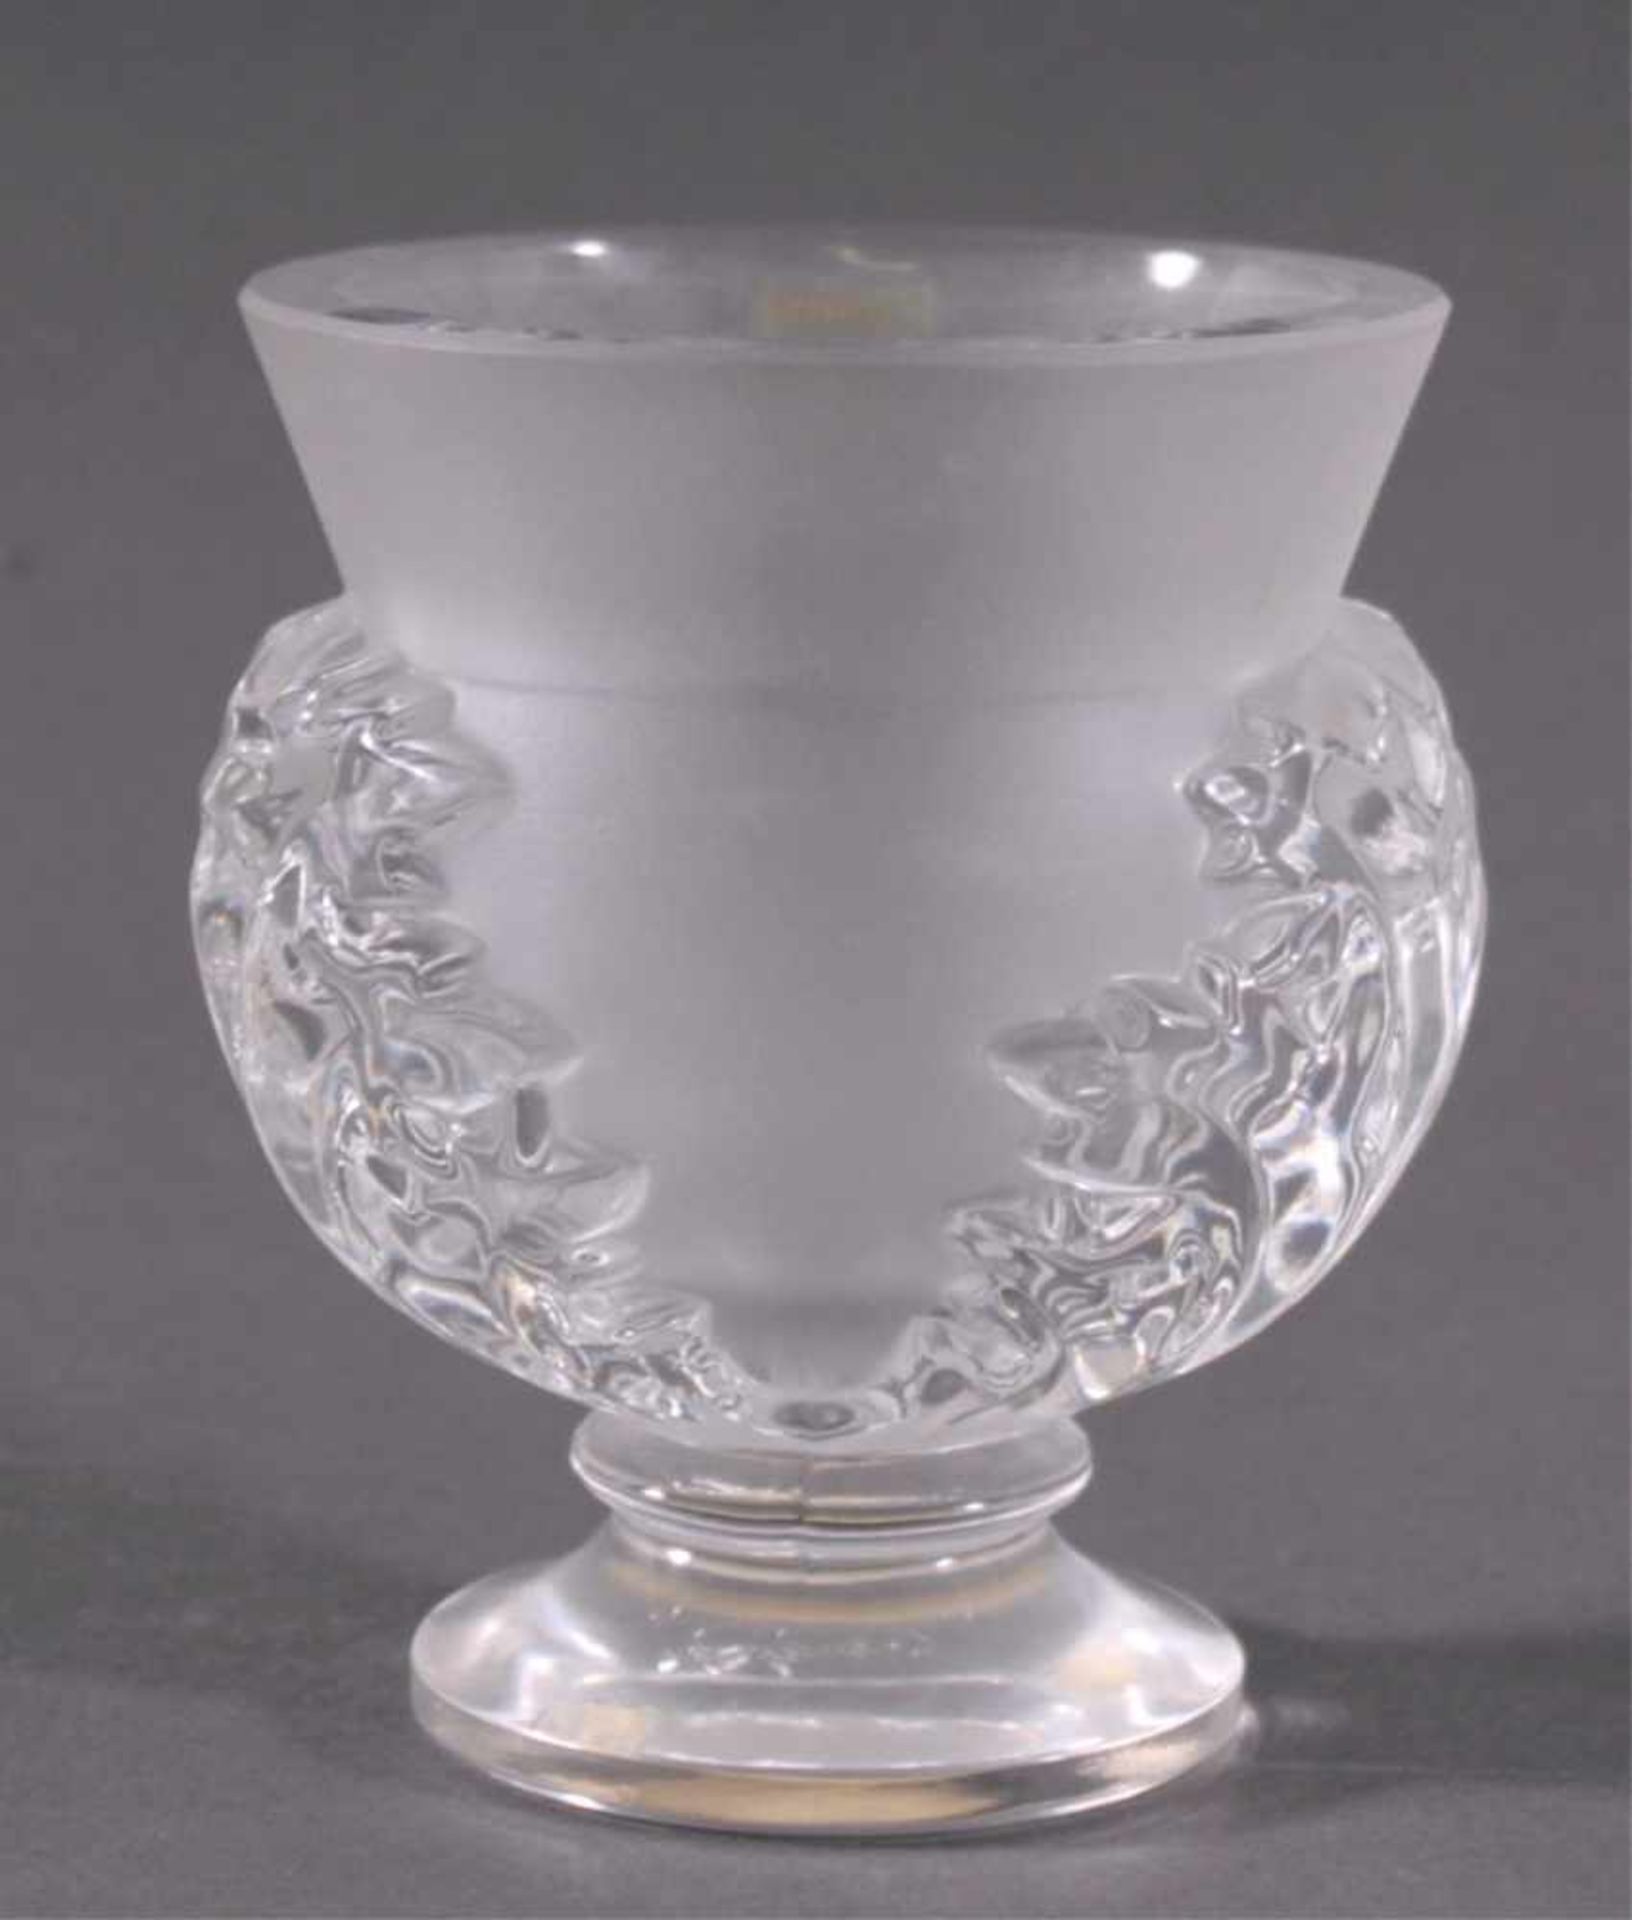 Vase, "Saint Cloud" - Lalique Paris Cristal20. Jahrhundert, farbloses Kristallglas, patiell